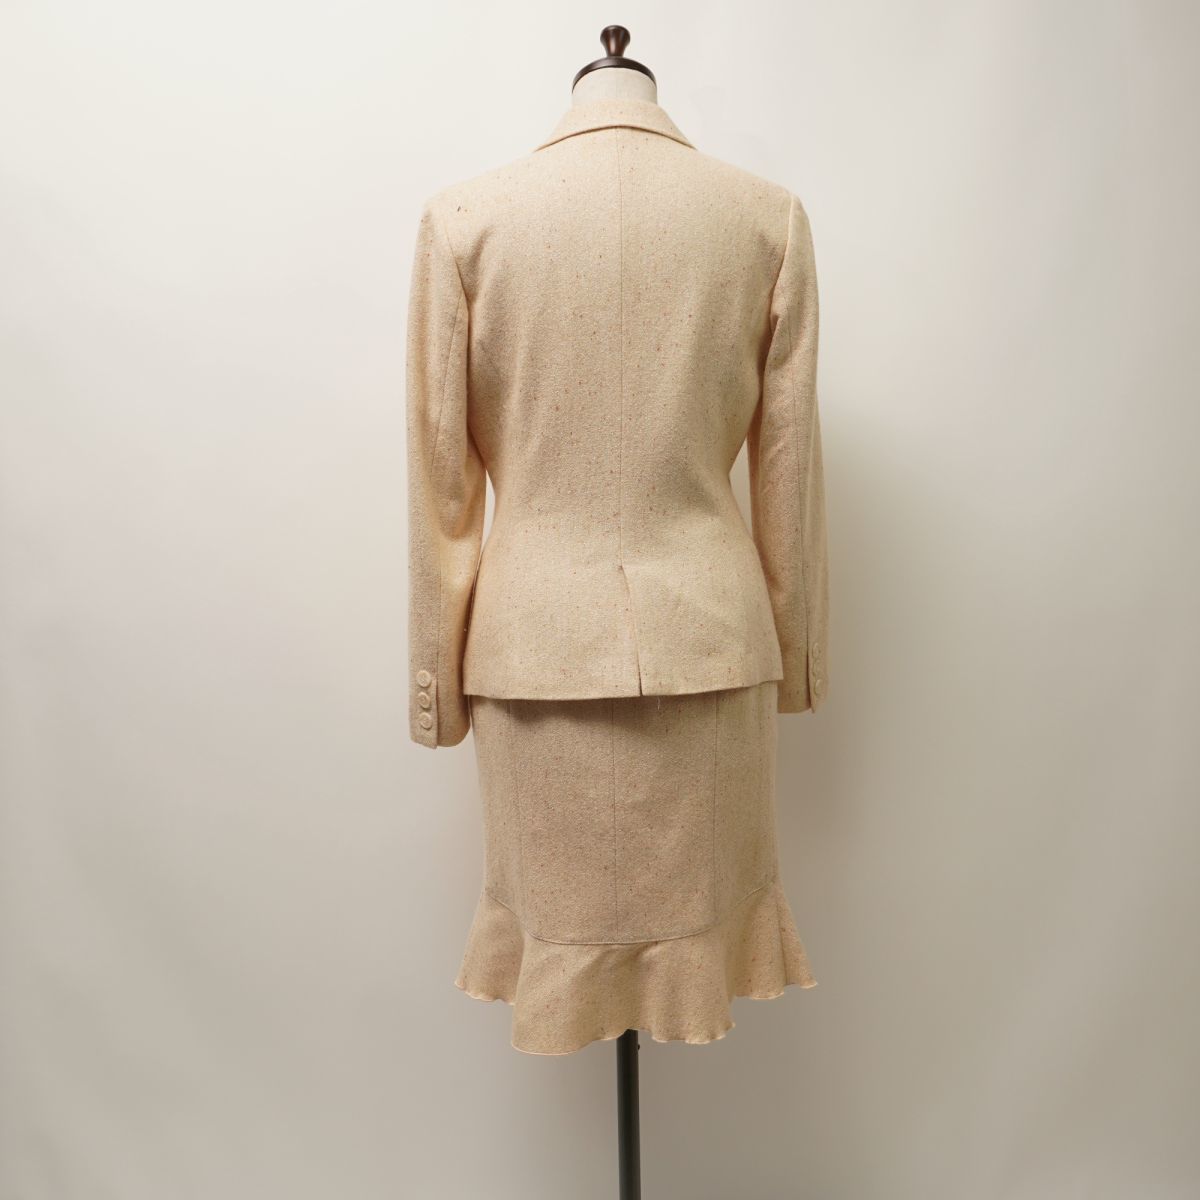  прекрасный товар 4*C выставить юбка костюм tailored jacket общий обратная сторона nep твид ламе колени длина подкладка есть бежевый размер 40*KC1433